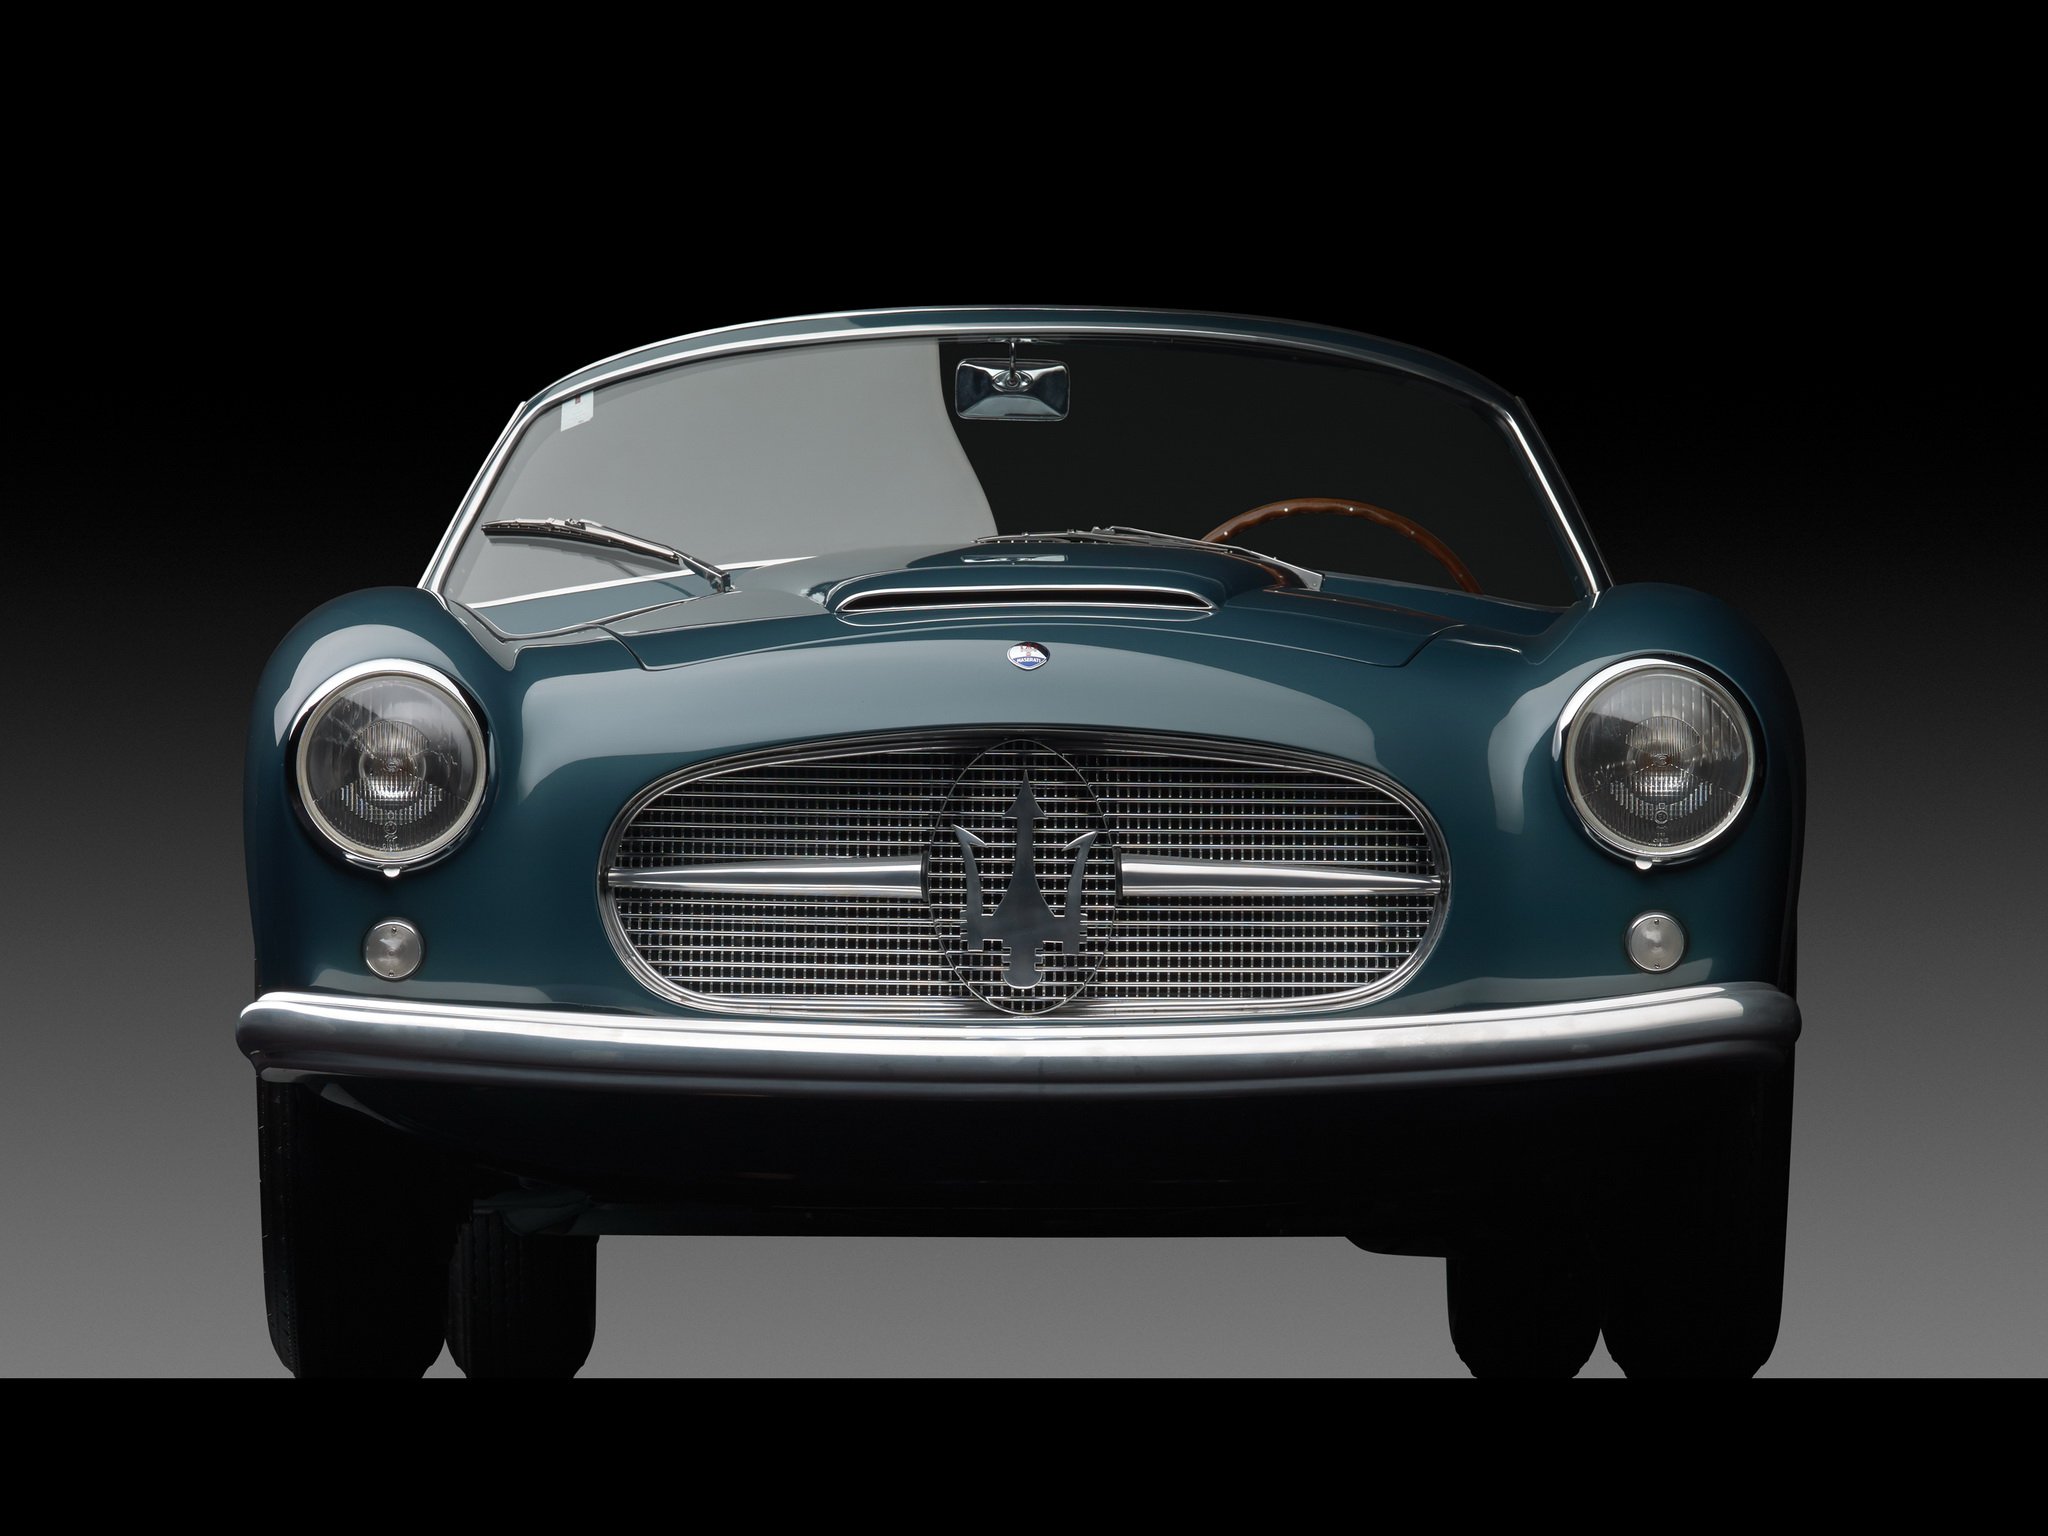 zagato, Maserati, A6g, 2000, Spider, Cars, 1954 Wallpapers ...